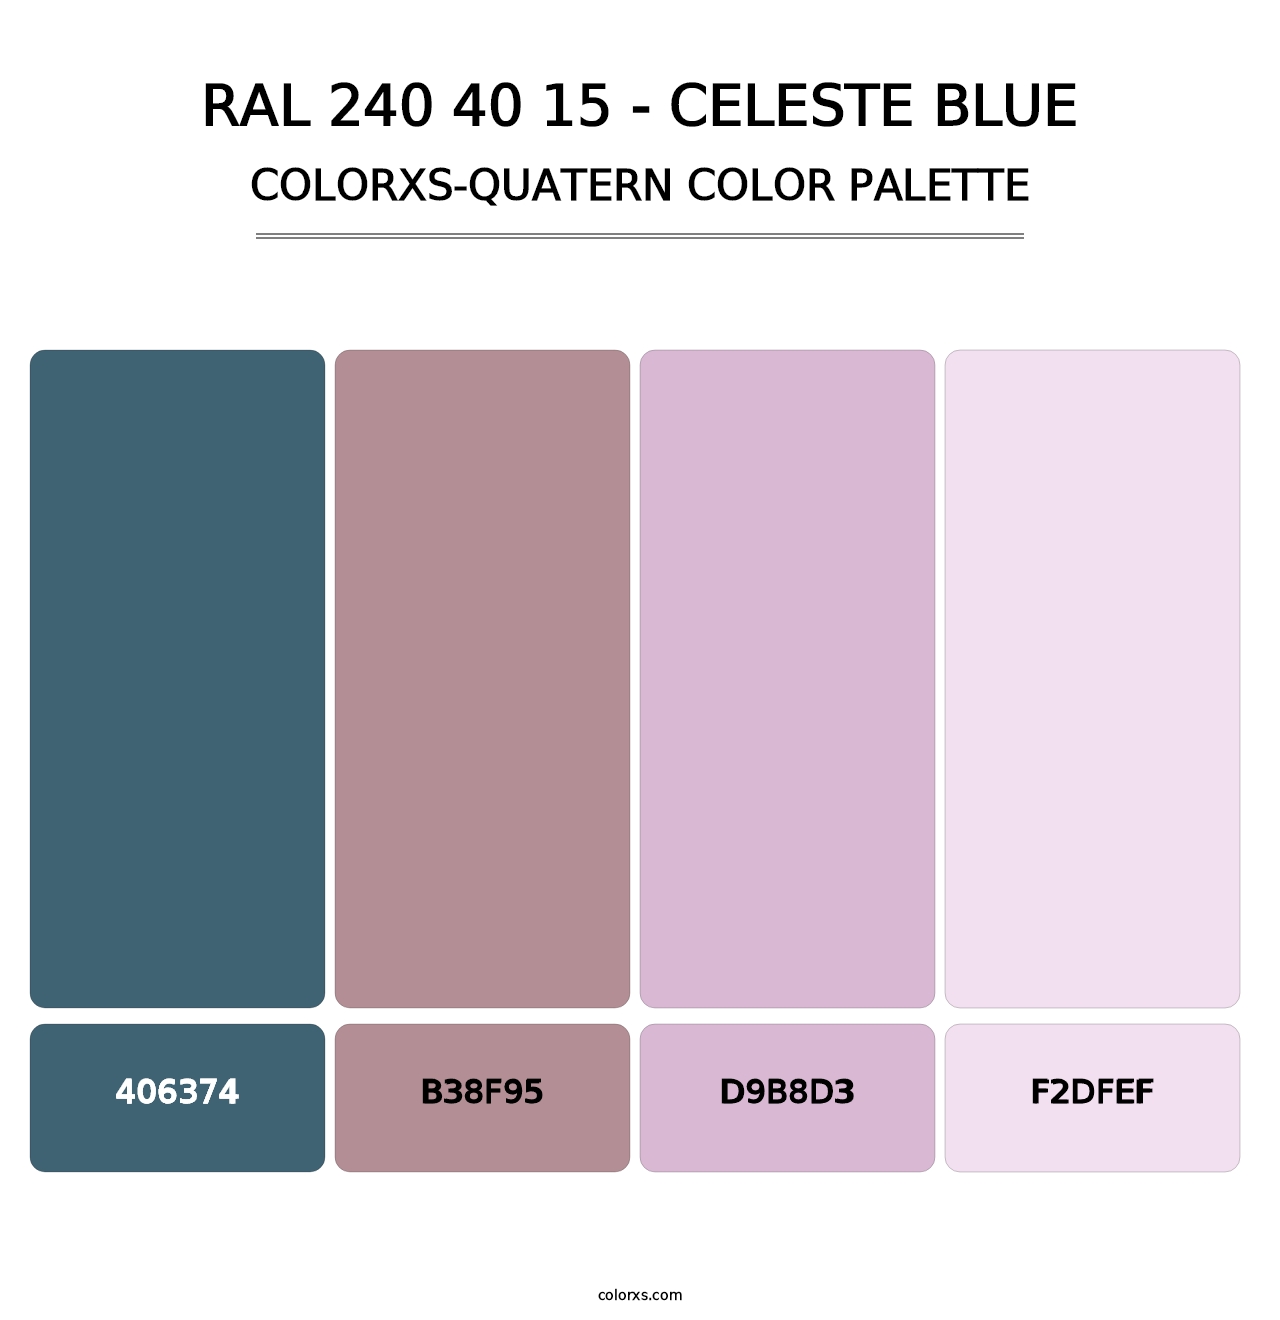 RAL 240 40 15 - Celeste Blue - Colorxs Quatern Palette